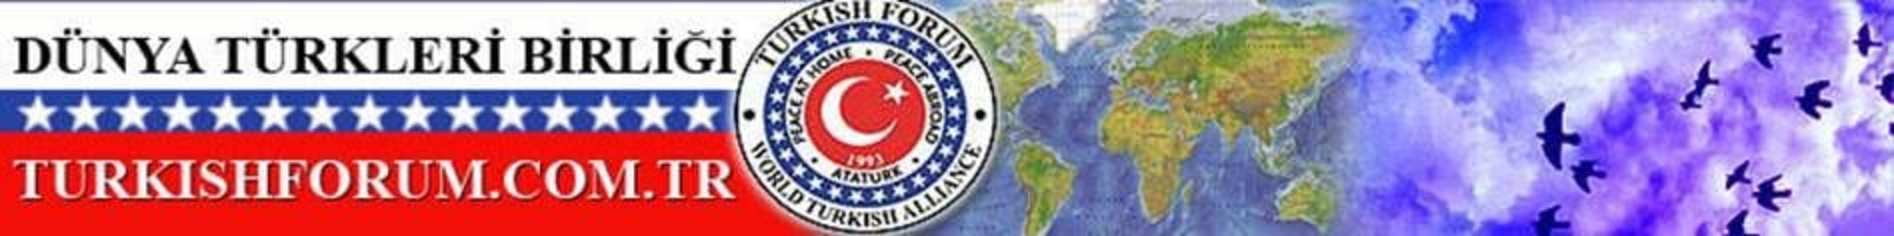 Perinçek’e Turkish Forum Cevabı